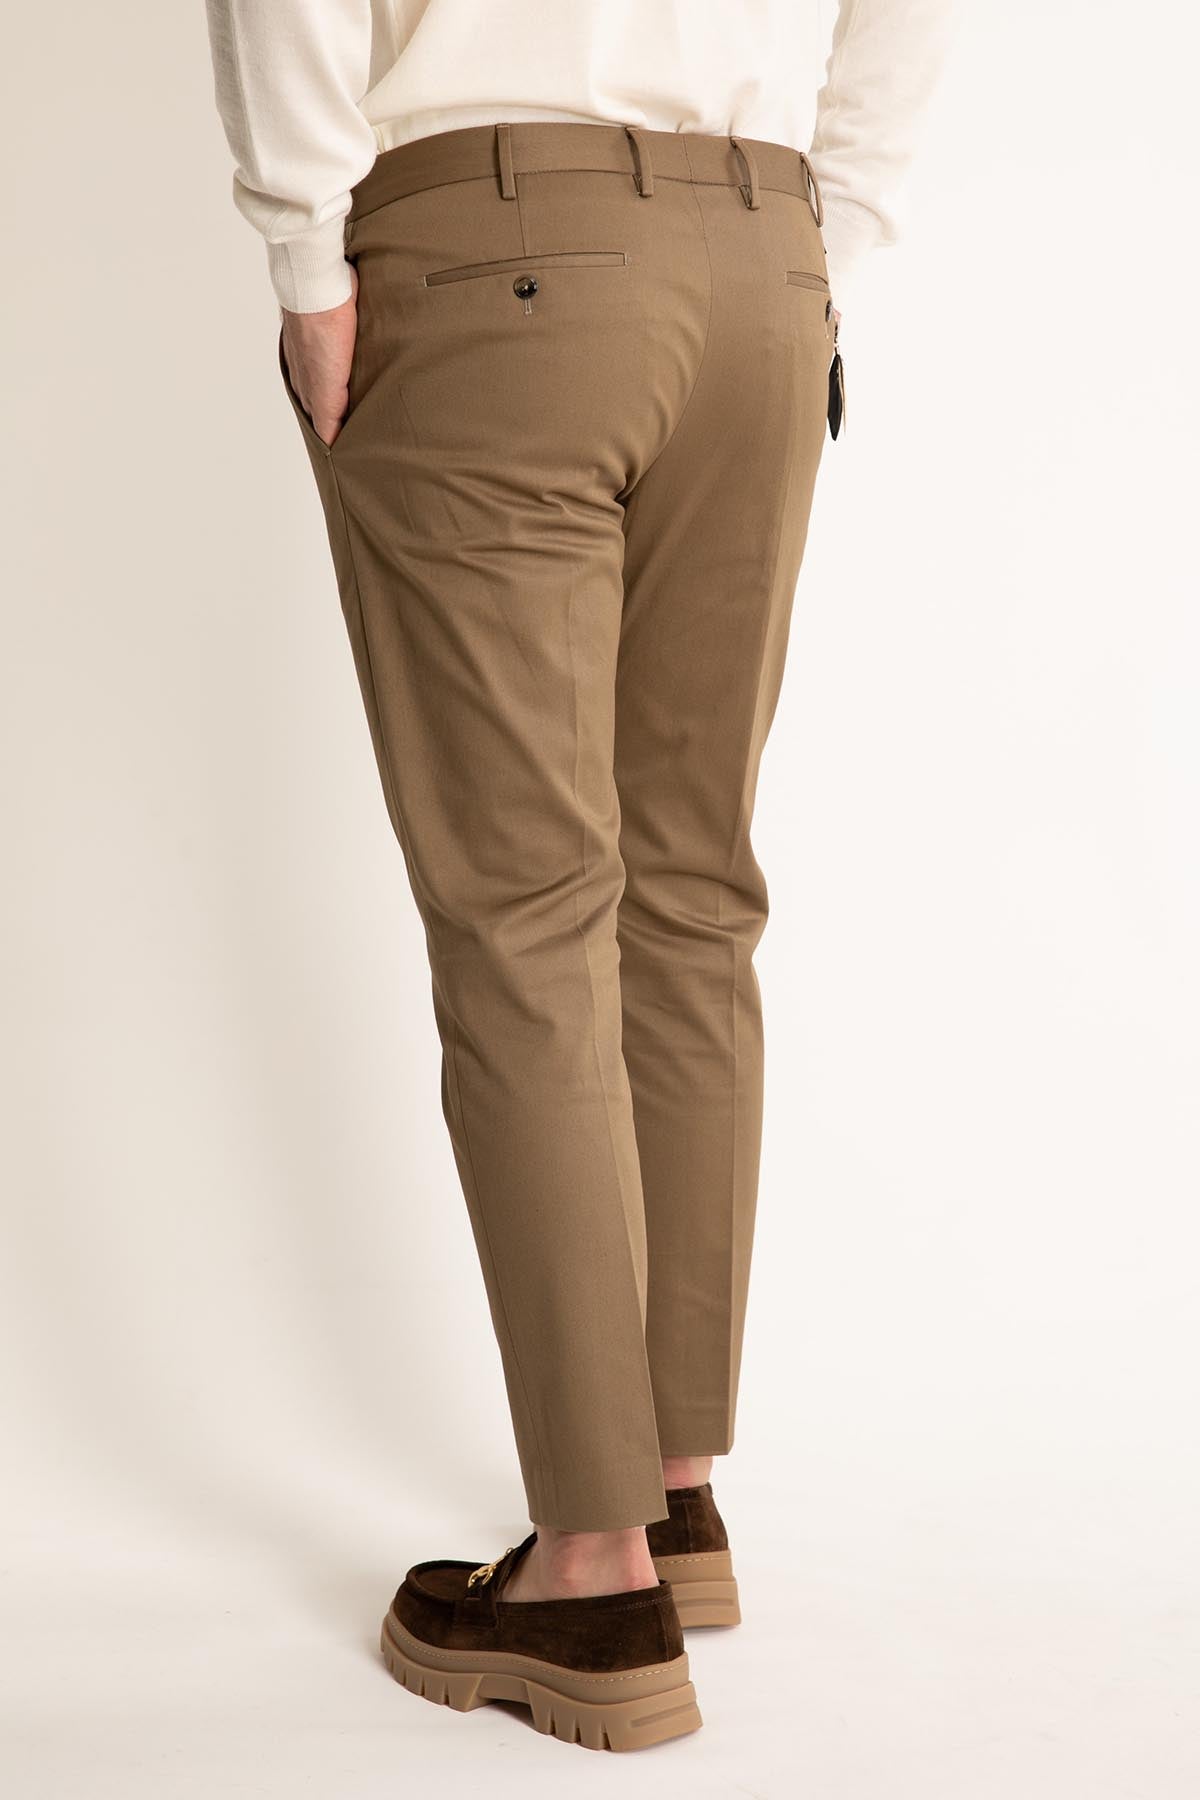 Pantaloni Torino Dieci Fit Pantolon-Libas Trendy Fashion Store